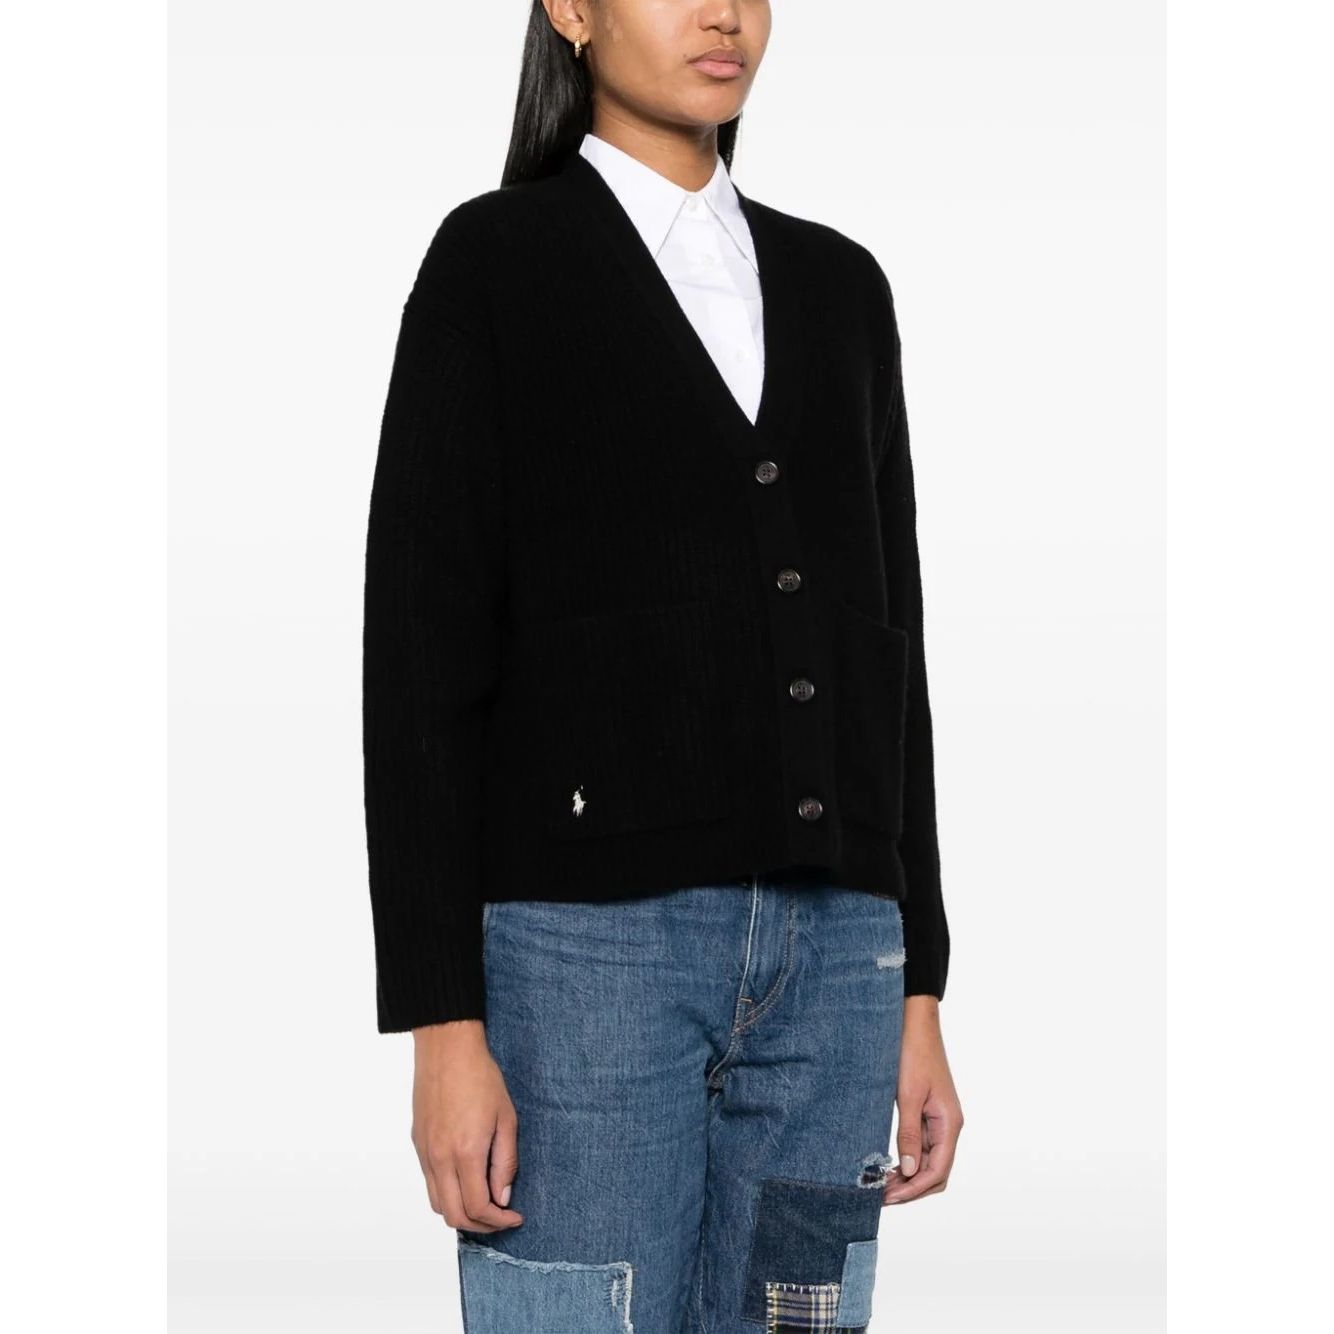 POLO RALPH LAUREN moteriškas juodas megztinis Long sleeve cardigan